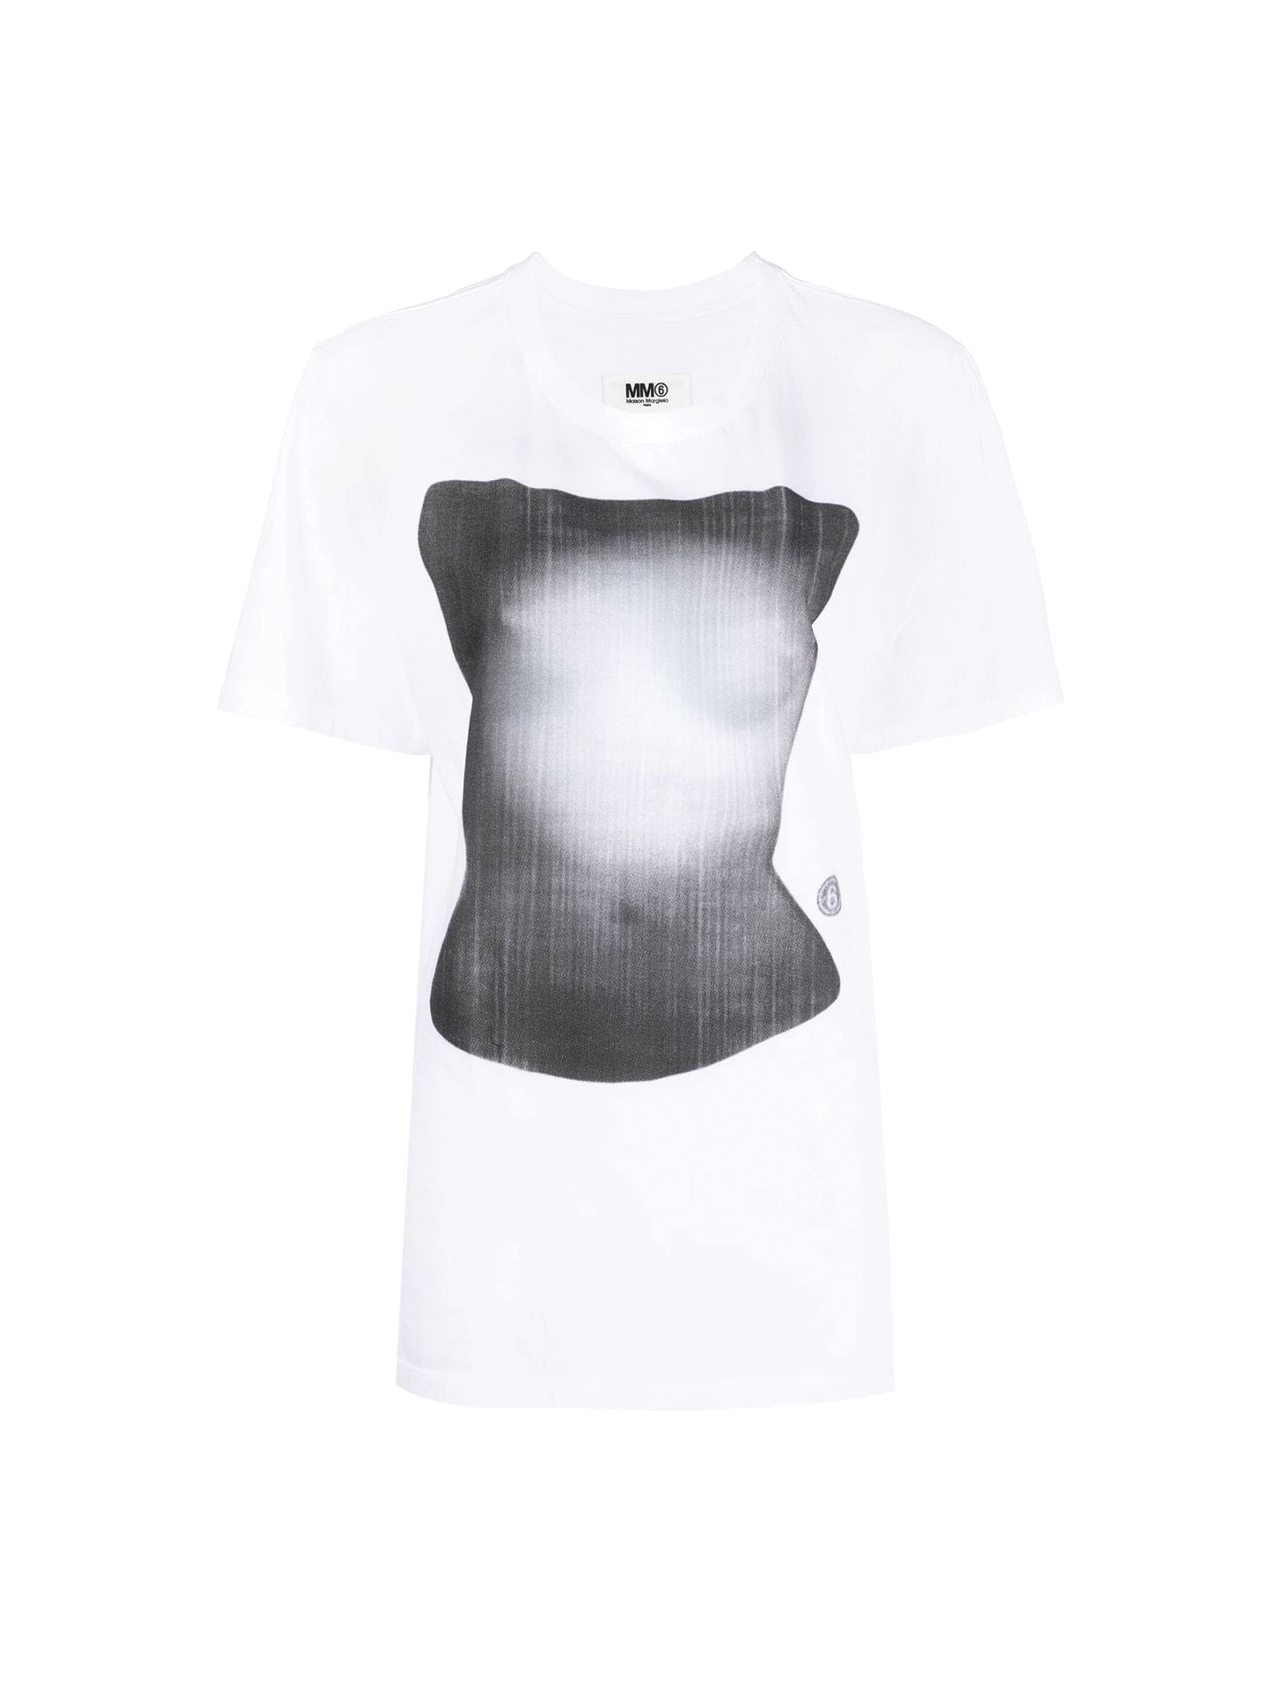 MM6 White Graphic T-shirt